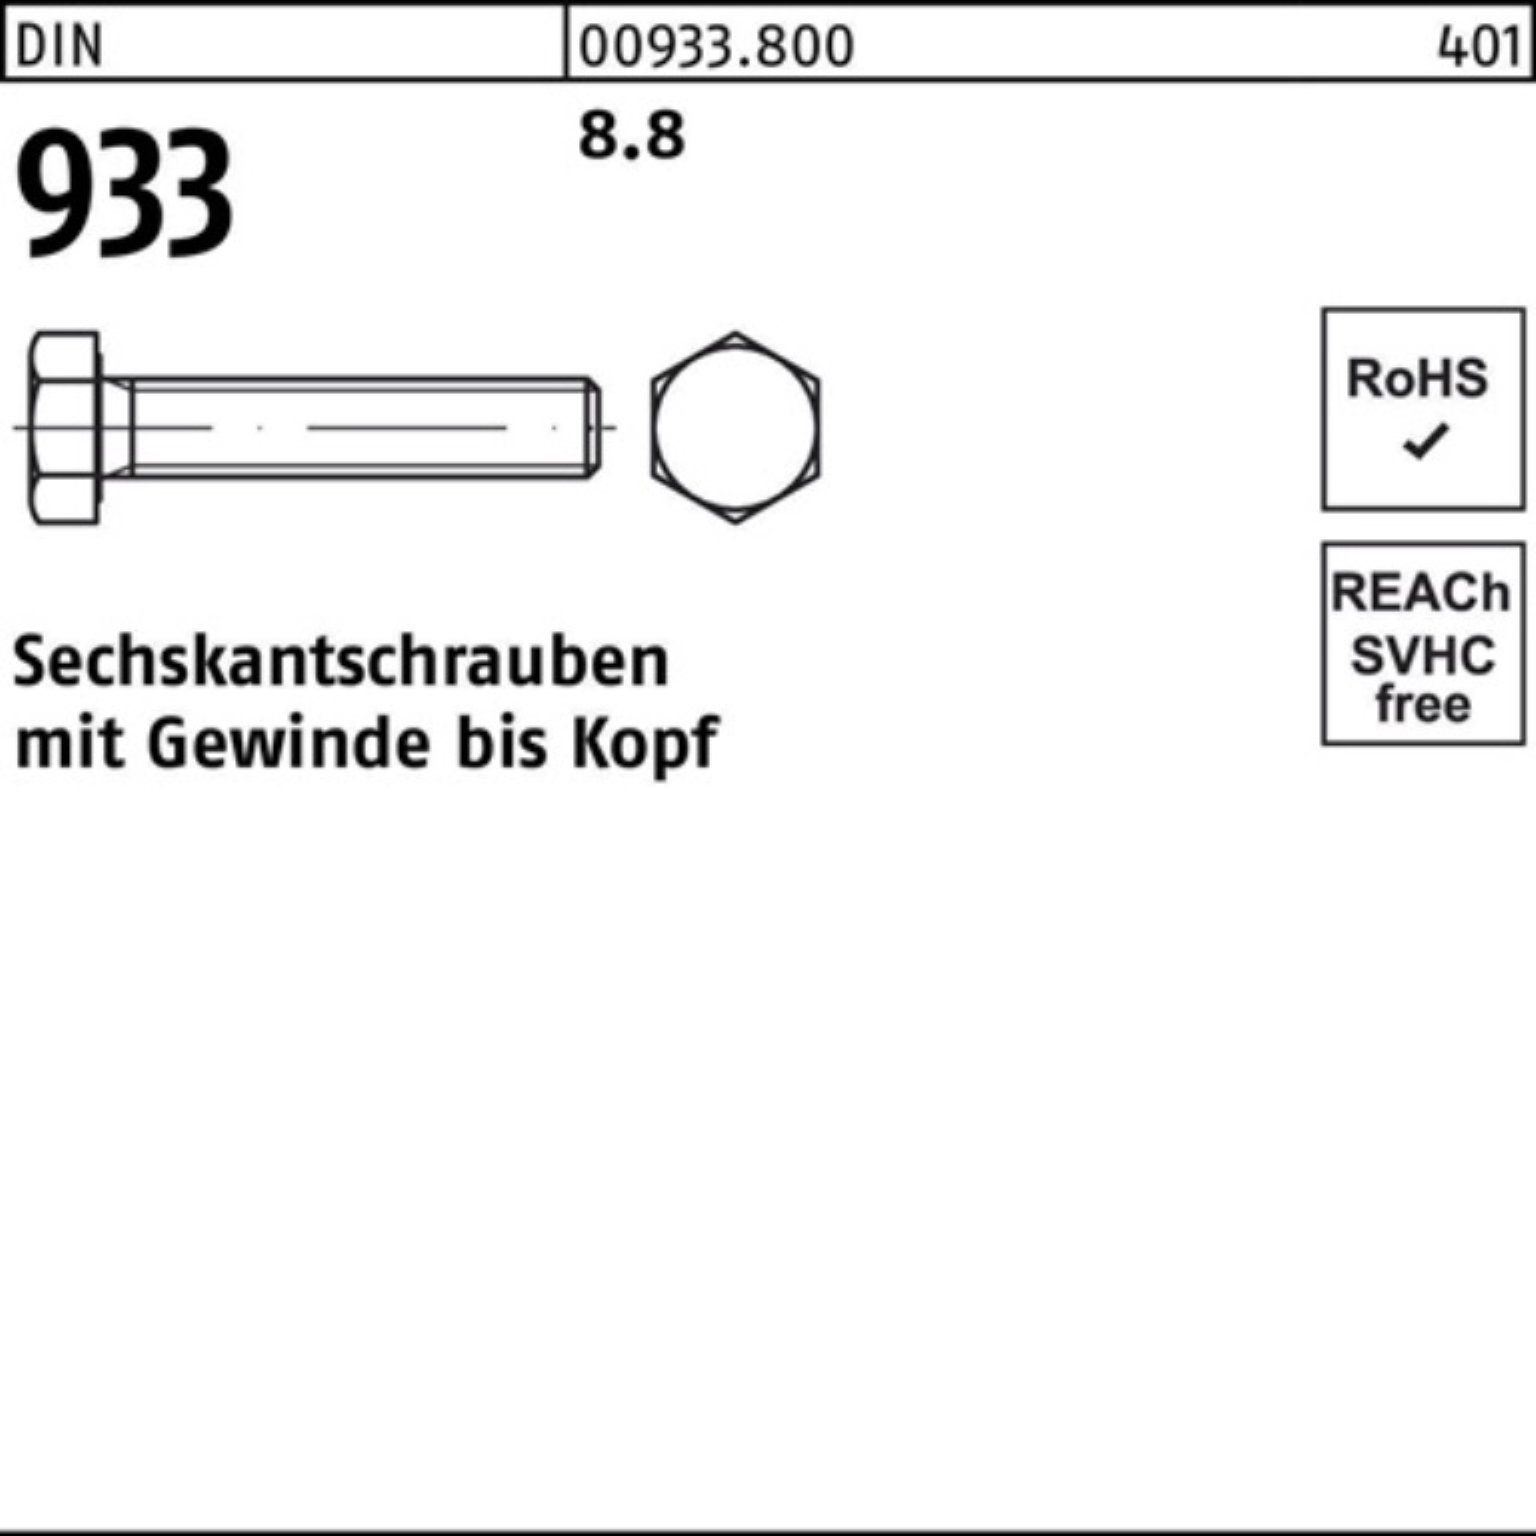 933 Sechskantschraube Reyher Stück VG DIN 500 M6x Pack 933 8 Sechskantschraube DIN 8.8 500er 6